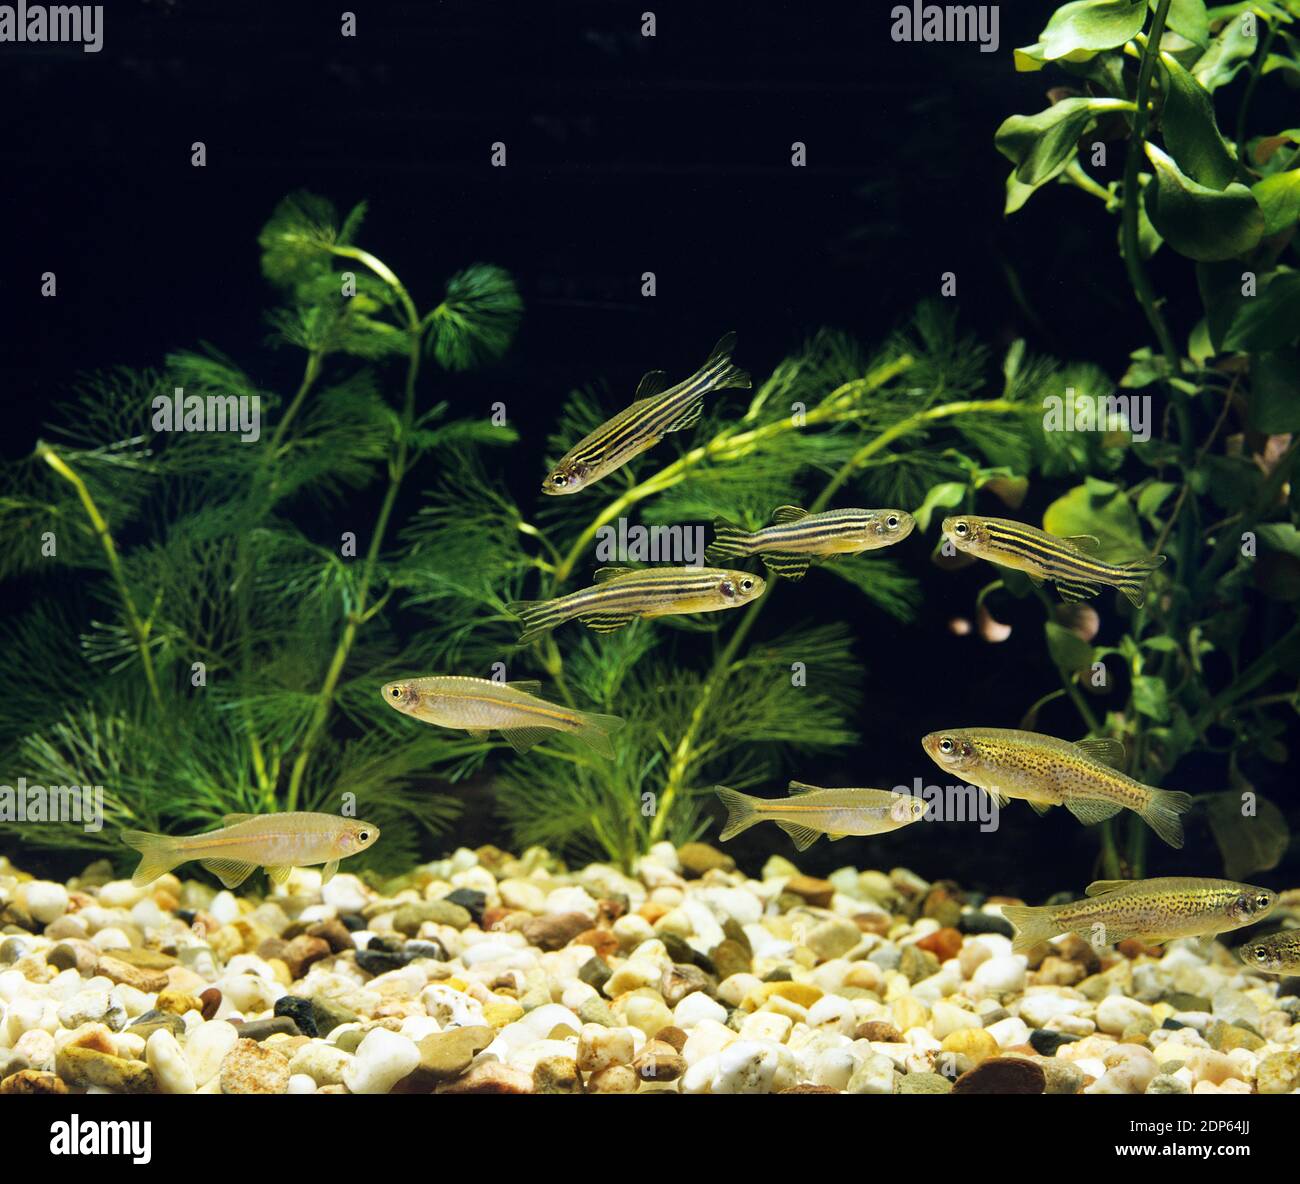 Aquarium with Pearl Danio, brachydanio albolineatus, Leopard Danio, brachydanio frankei and Zebra Danio Fish, brachydanio rerio Stock Photo